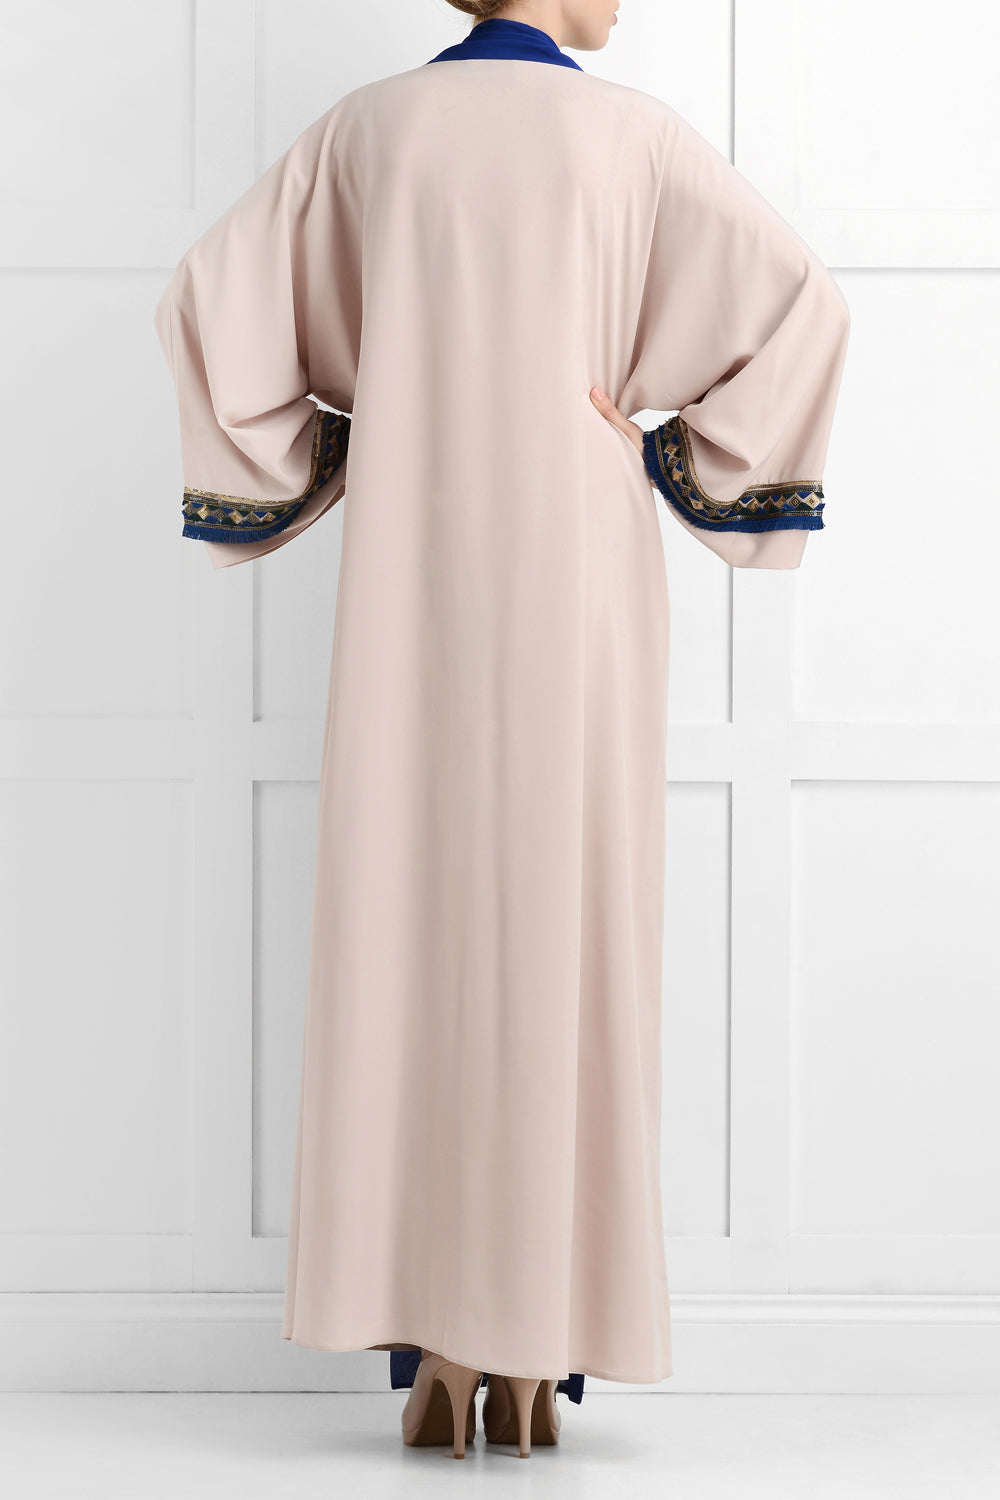 Maysa Luxury Abaya